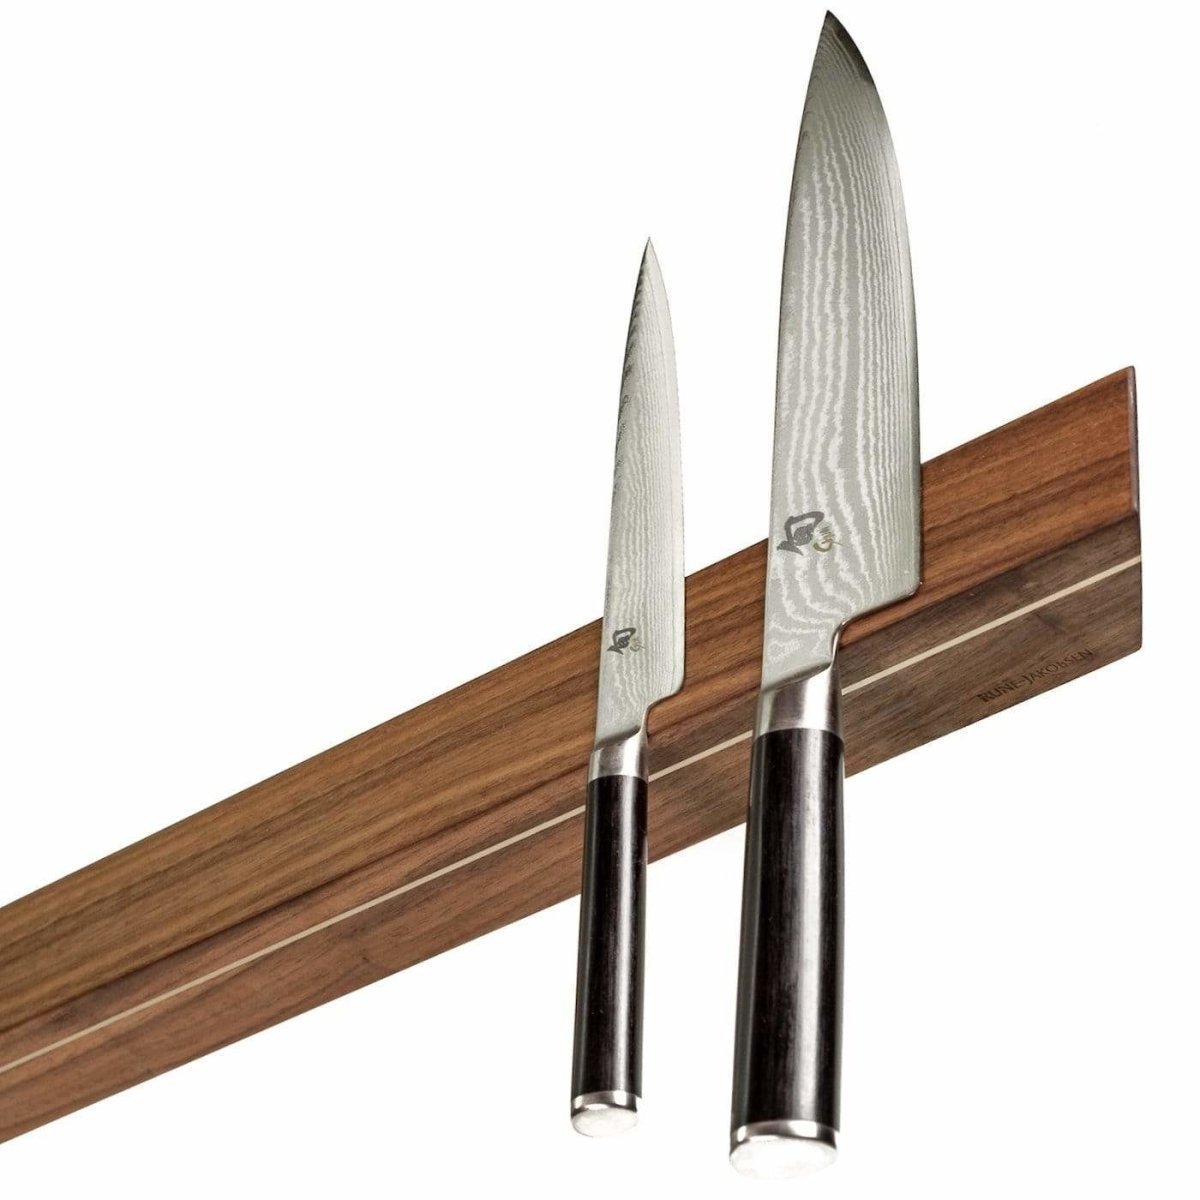 Rune-Jakobsen Woodworks 'Knifeboard Exclusive' dyb knivmagnet_4 by Rune-Jakobsen Design